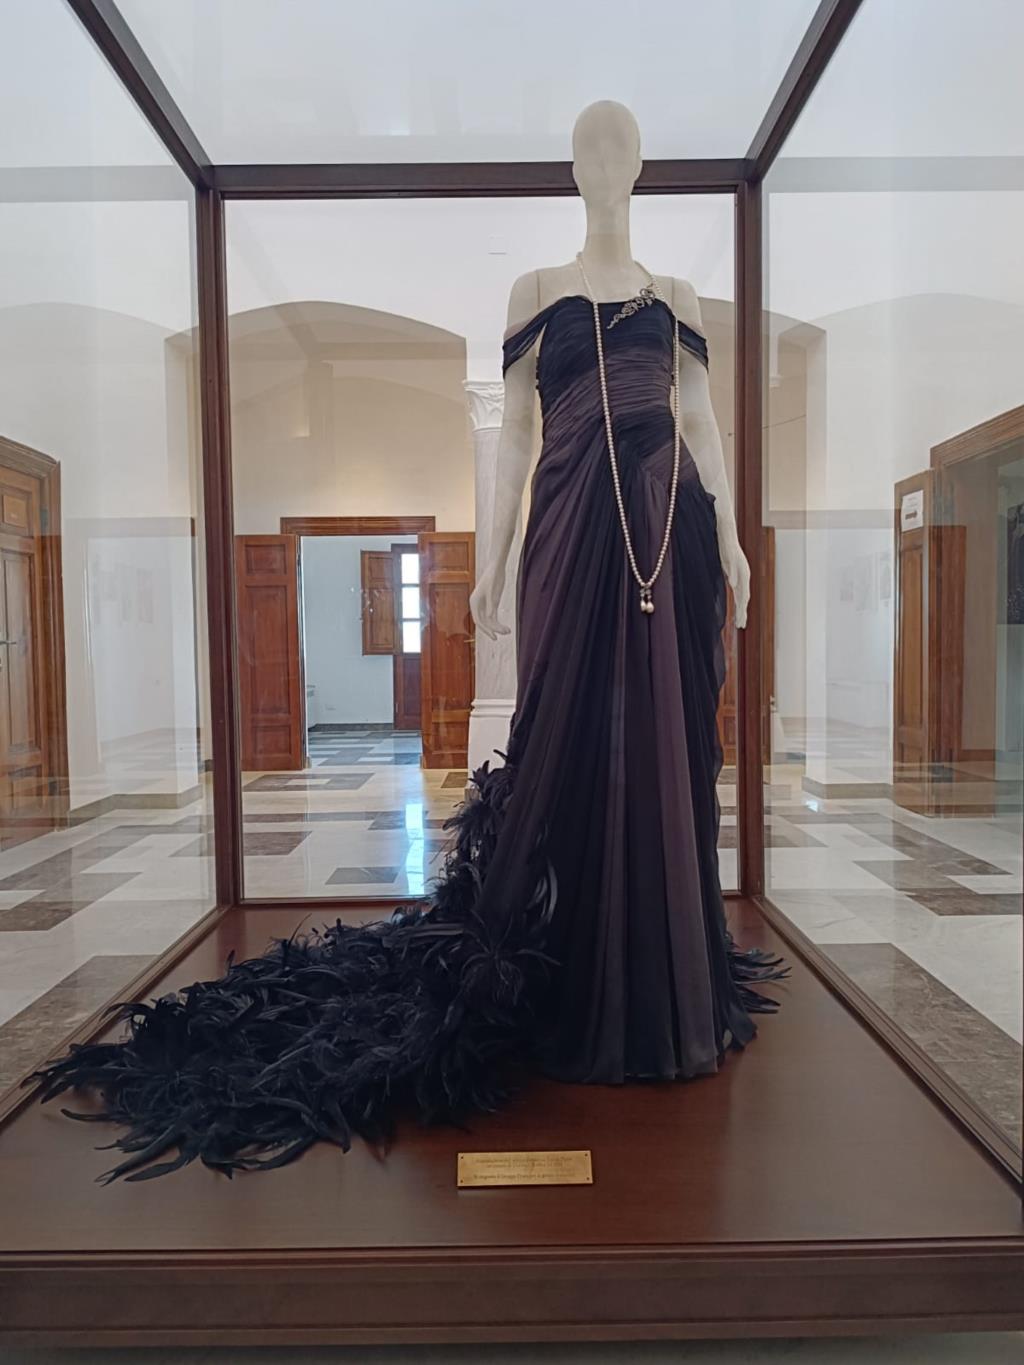 Inaugurata a Favignana l'esposizione permanente dedicata a Donna Franca e alla Belle Époque